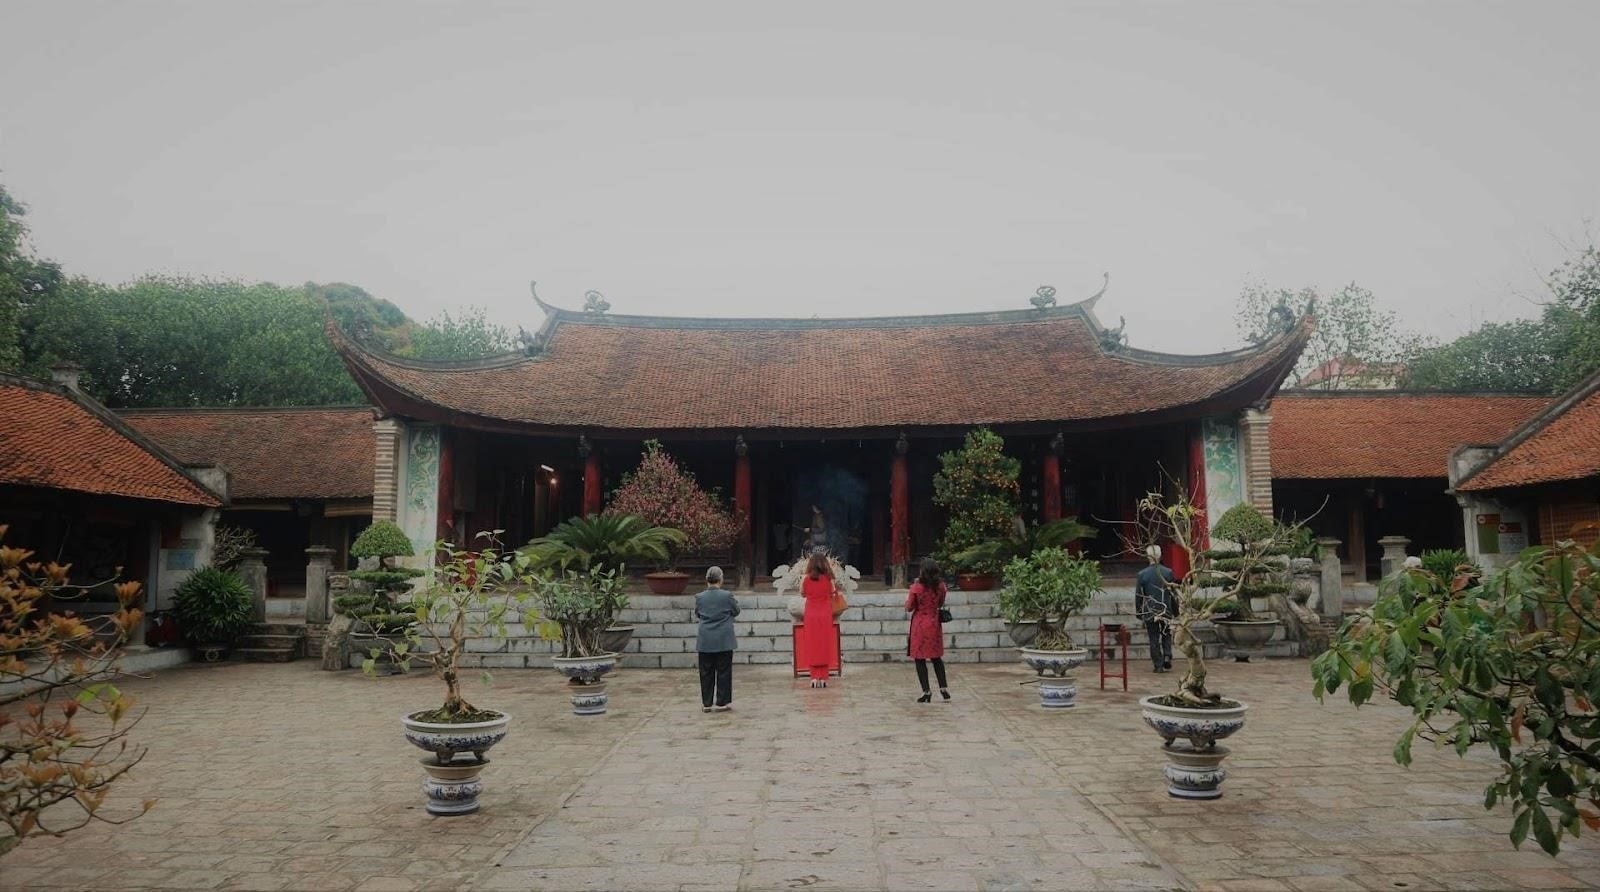 1. Đối với những người yêu thích lịch sử, Thành Cổ Loa là một điểm đến trong ngày gần Hà Nội.